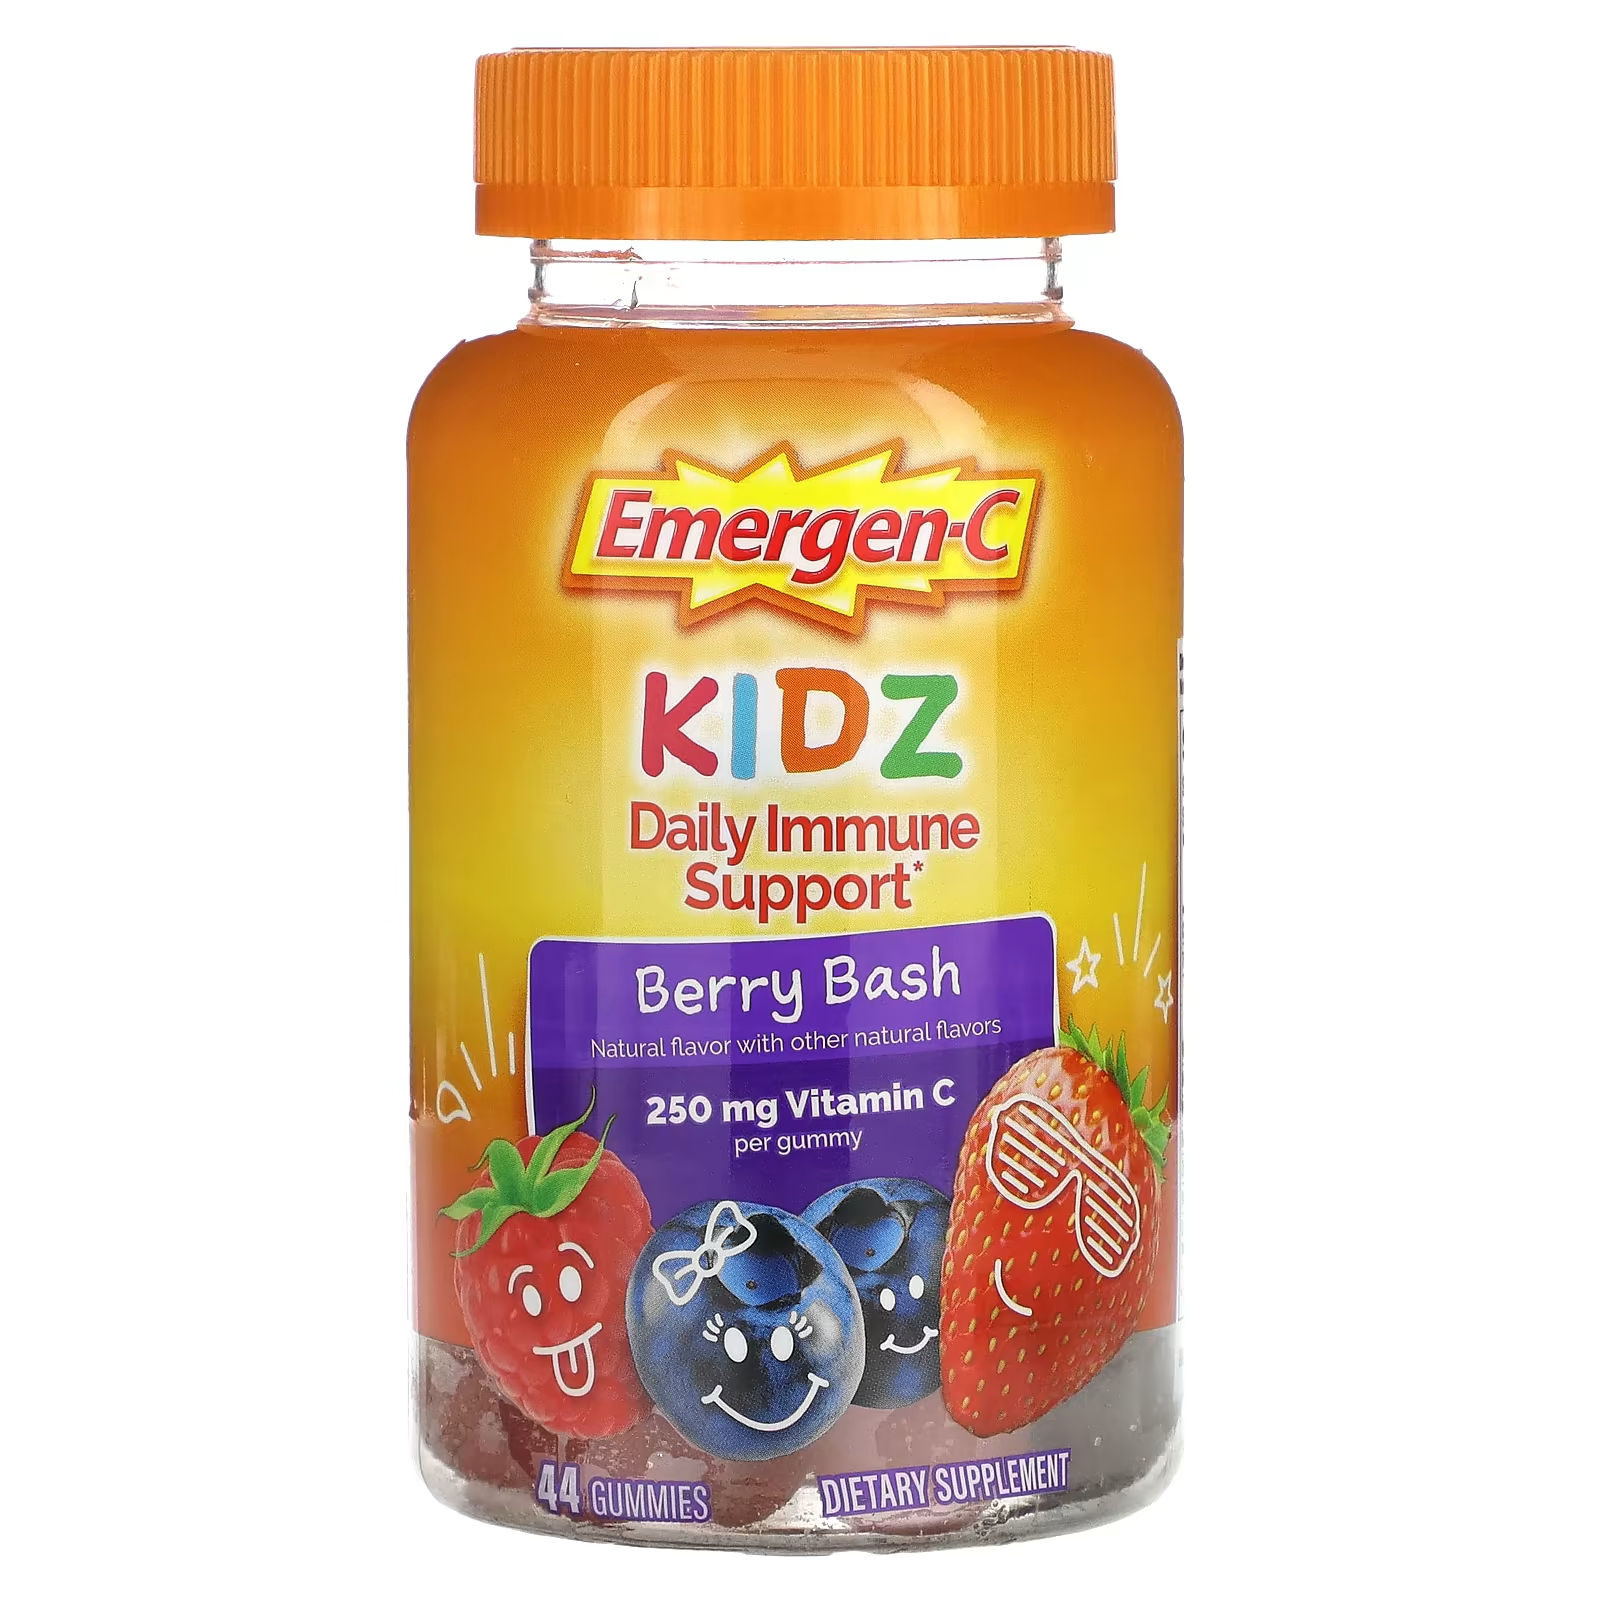 Пищевая добавка Emergen-C Kidz Daily Immune Support Berry Bash, 44 жевательных конфеты emergen c kidz ежедневная поддержка иммунитета berry bash 250 мг 44 жевательные таблетки